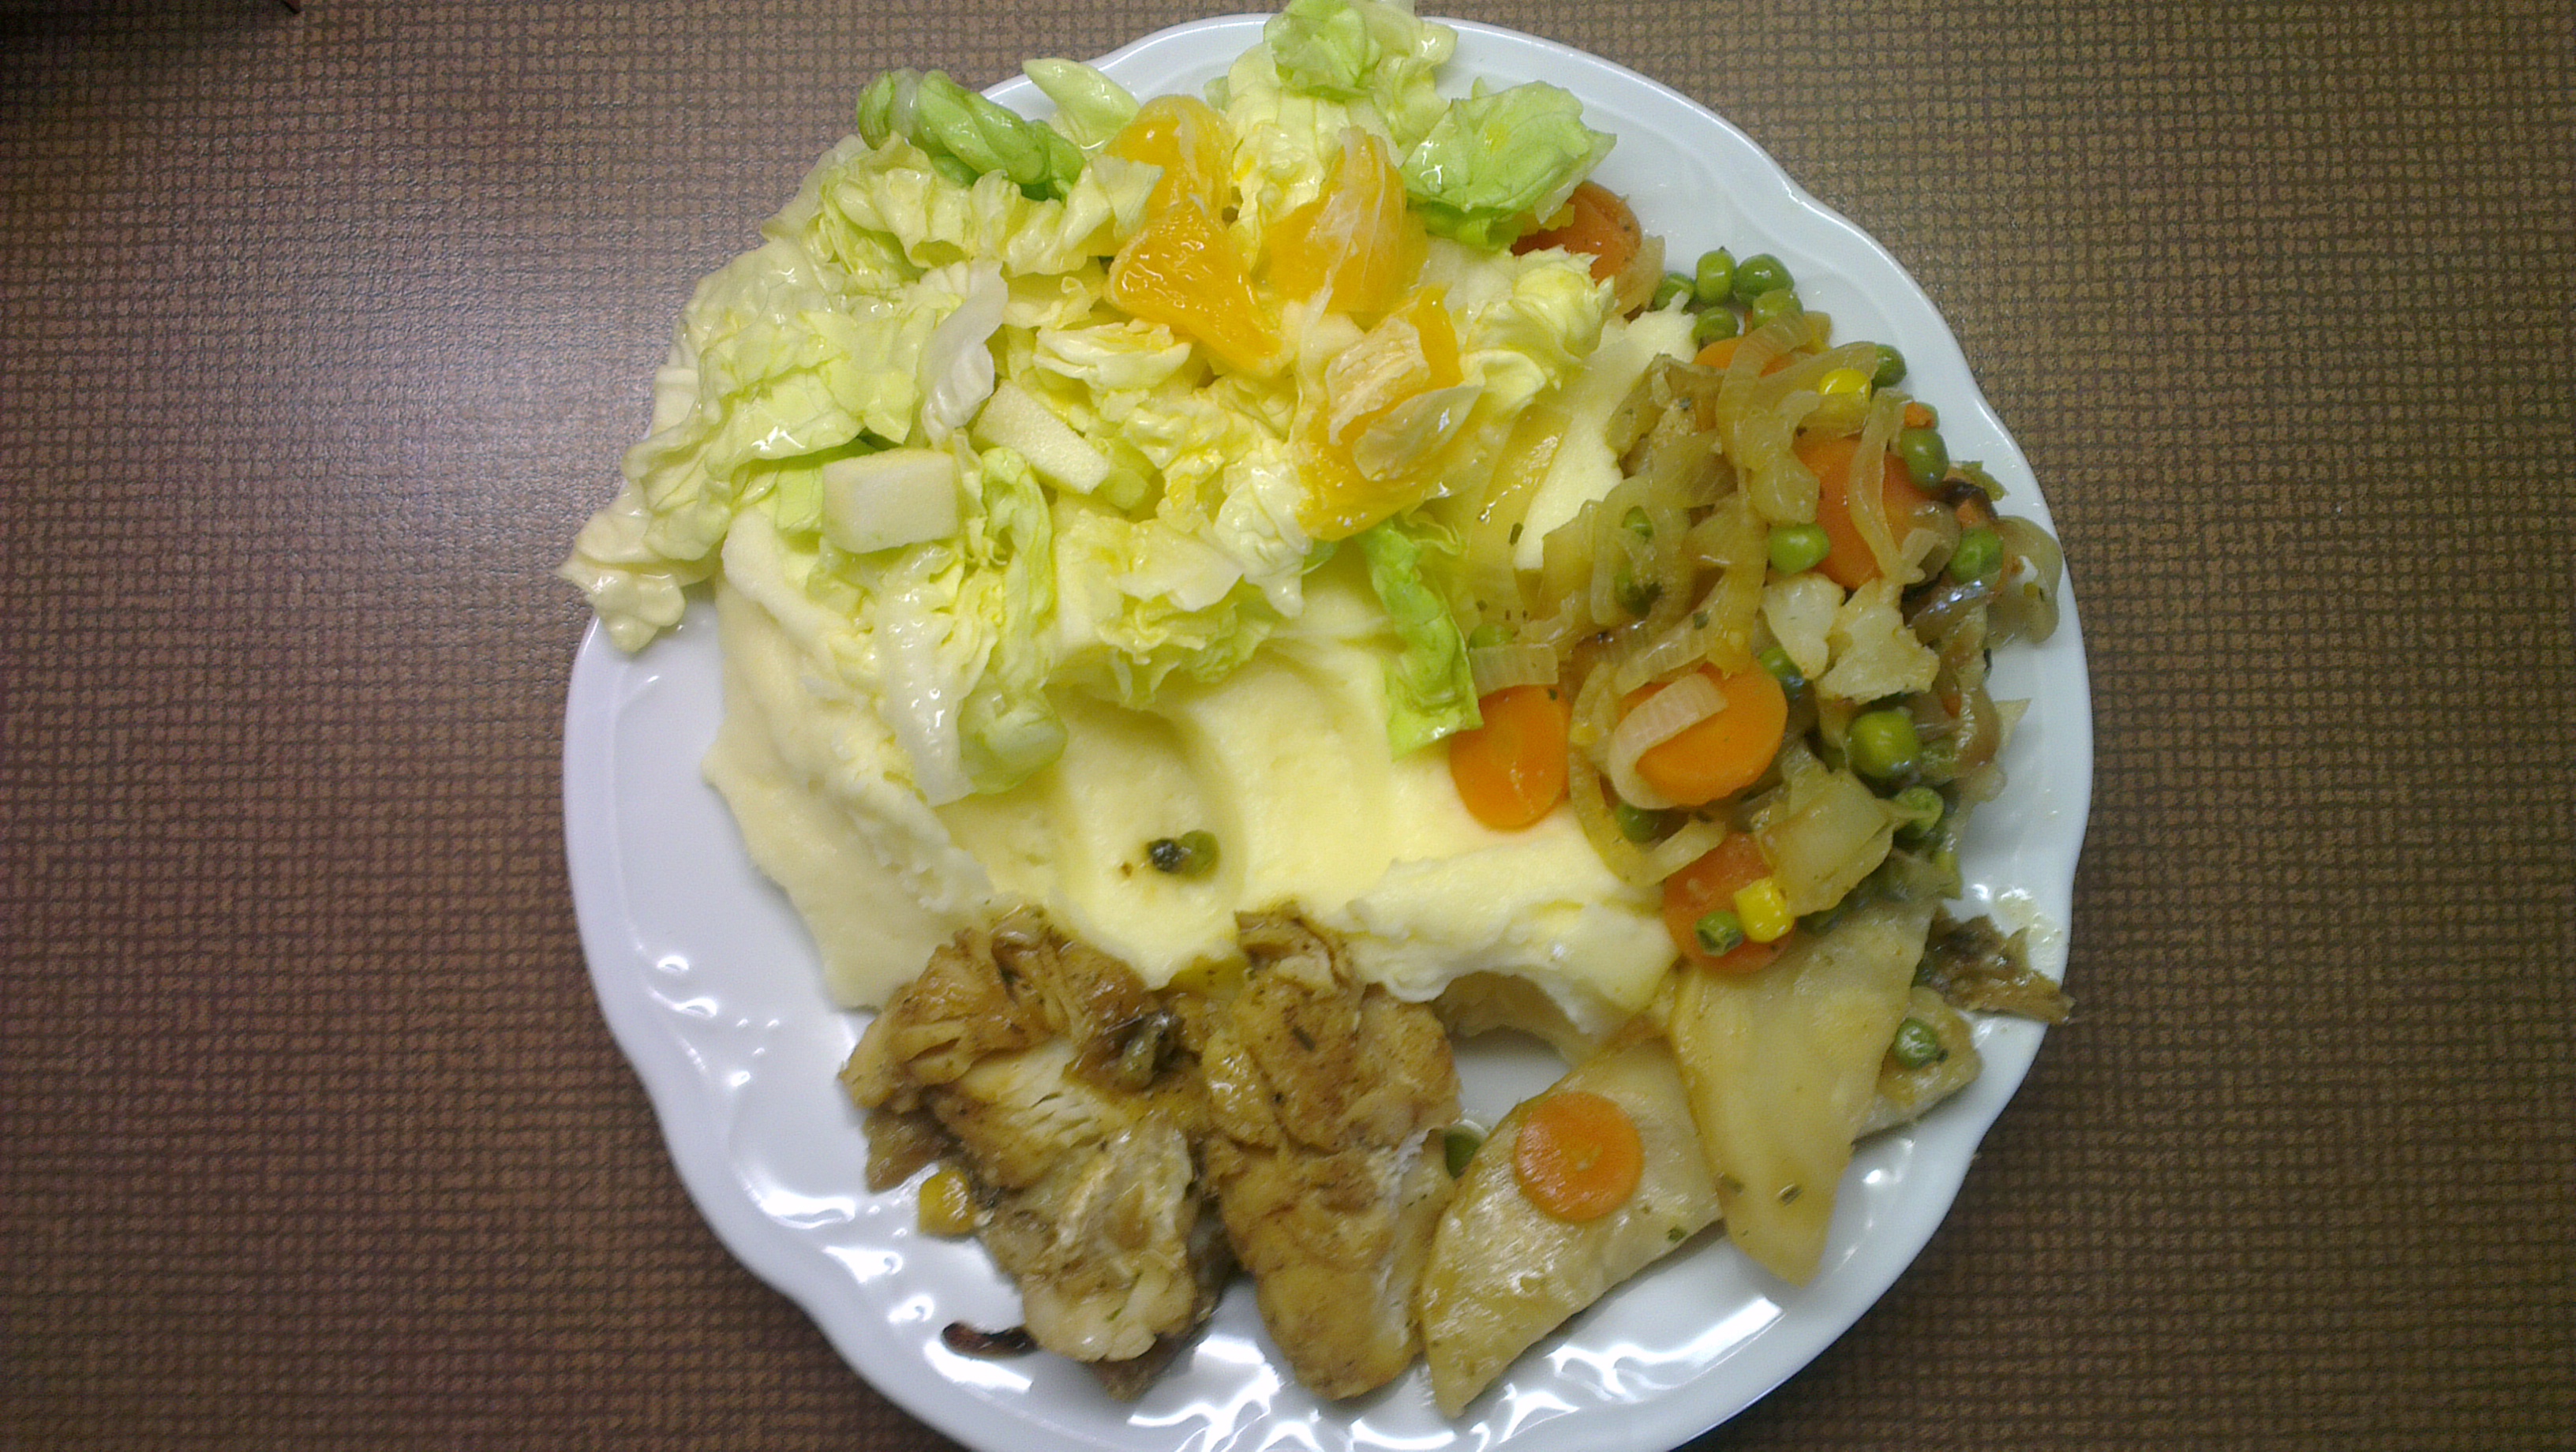 ryba a celer opečený, dušená zelenina, bramborová kaše, ledový salát s pomerančem